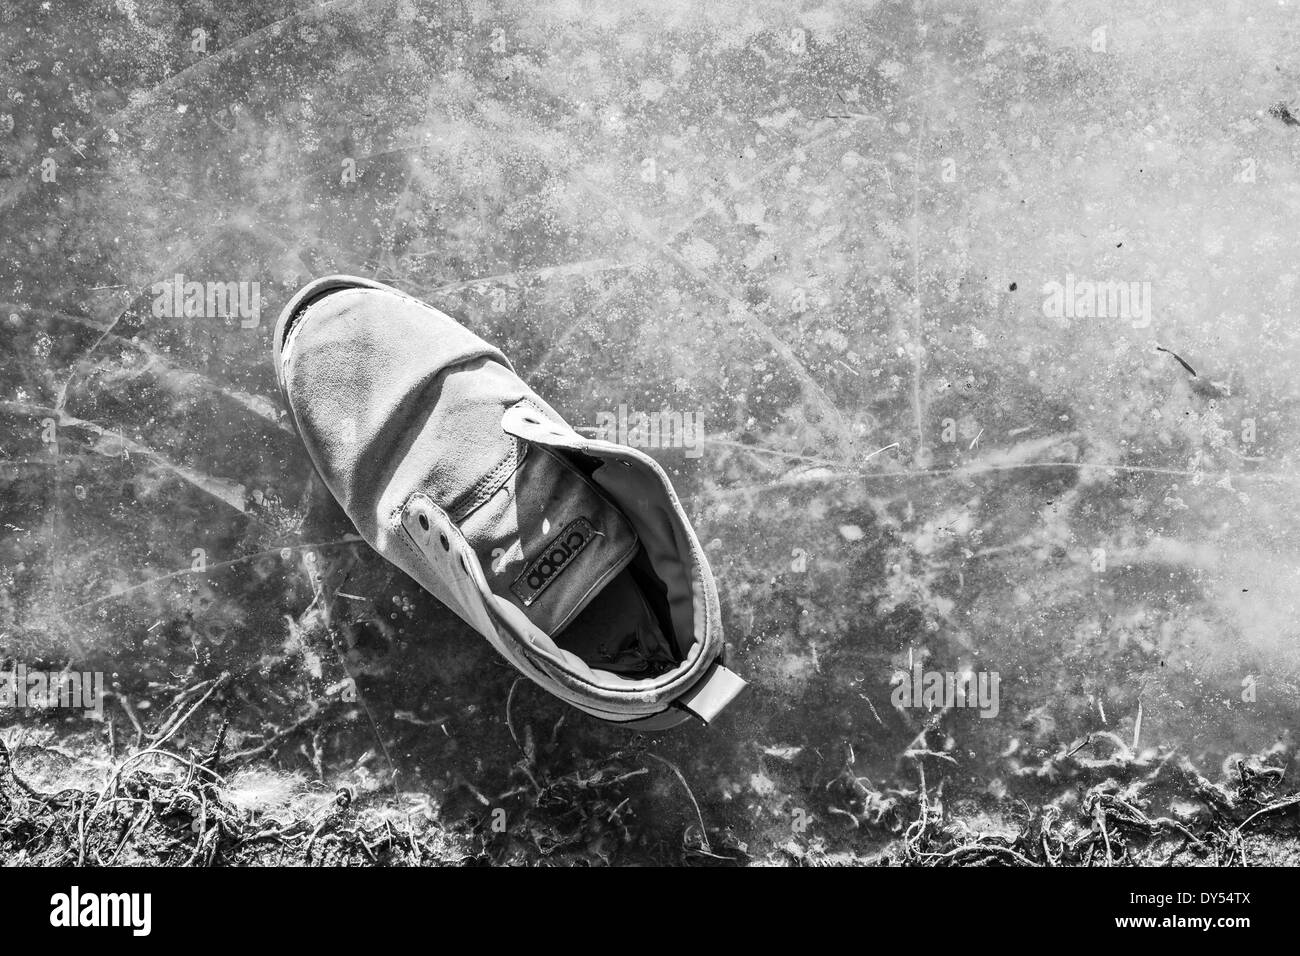 La chaussure de sport portés sur la flaque gelée Banque D'Images